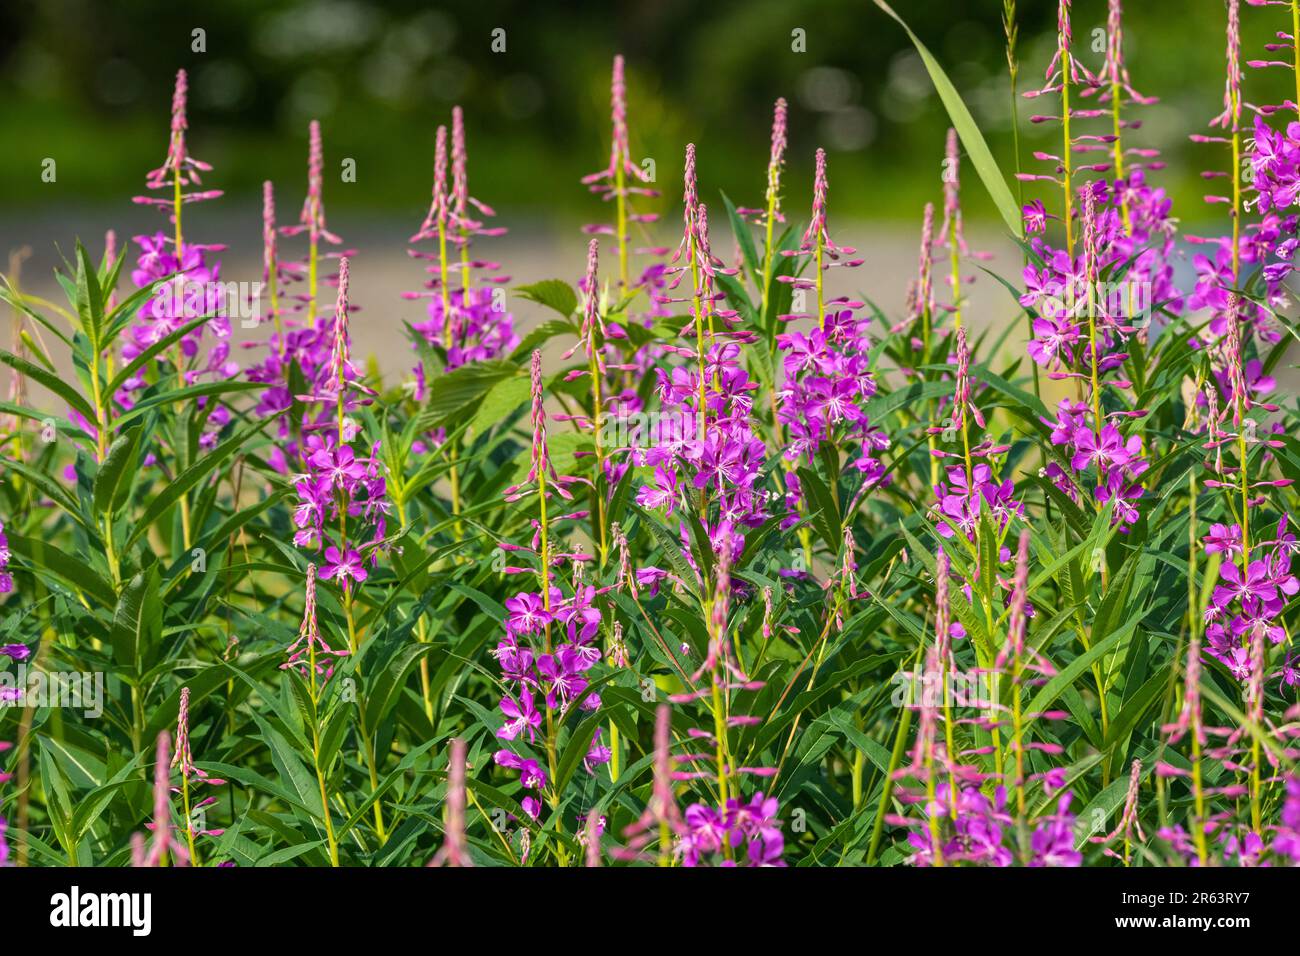 Wilde Feuerwebepflanzen, Blumen, die im Sommer nach einem Waldbrand im wilden Yukon Territory, Kanada, zu sehen sind, mit natürlicher Pink-, Lila- und Grünfarbe Stockfoto